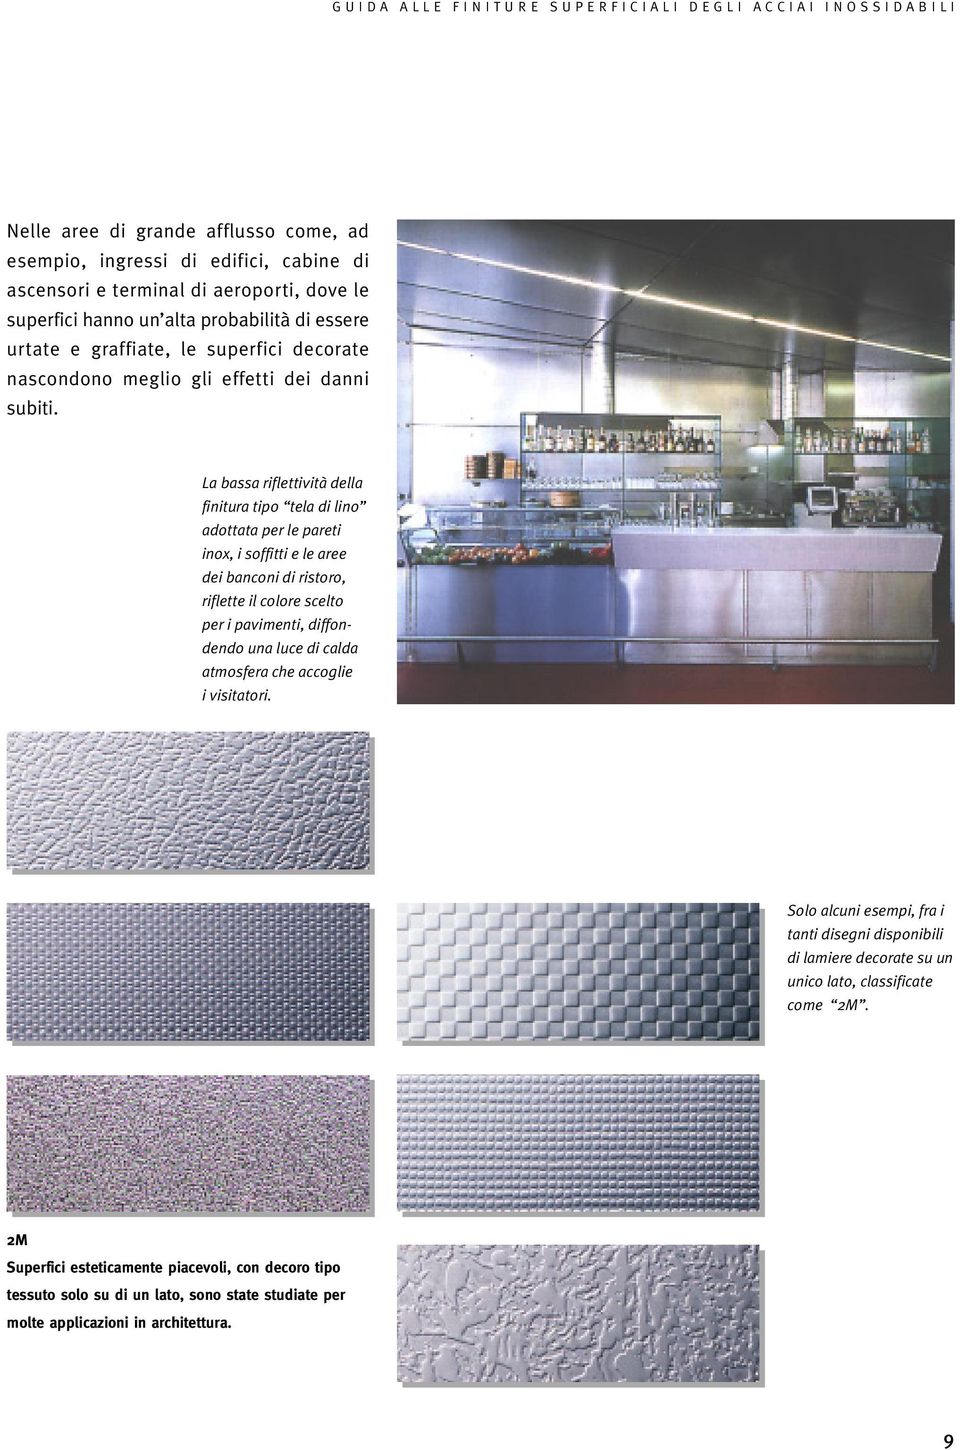 La bassa riflettività della finitura tipo tela di lino adottata per le pareti inox, i soffitti e le aree dei banconi di ristoro, riflette il colore scelto per i pavimenti, diffondendo una